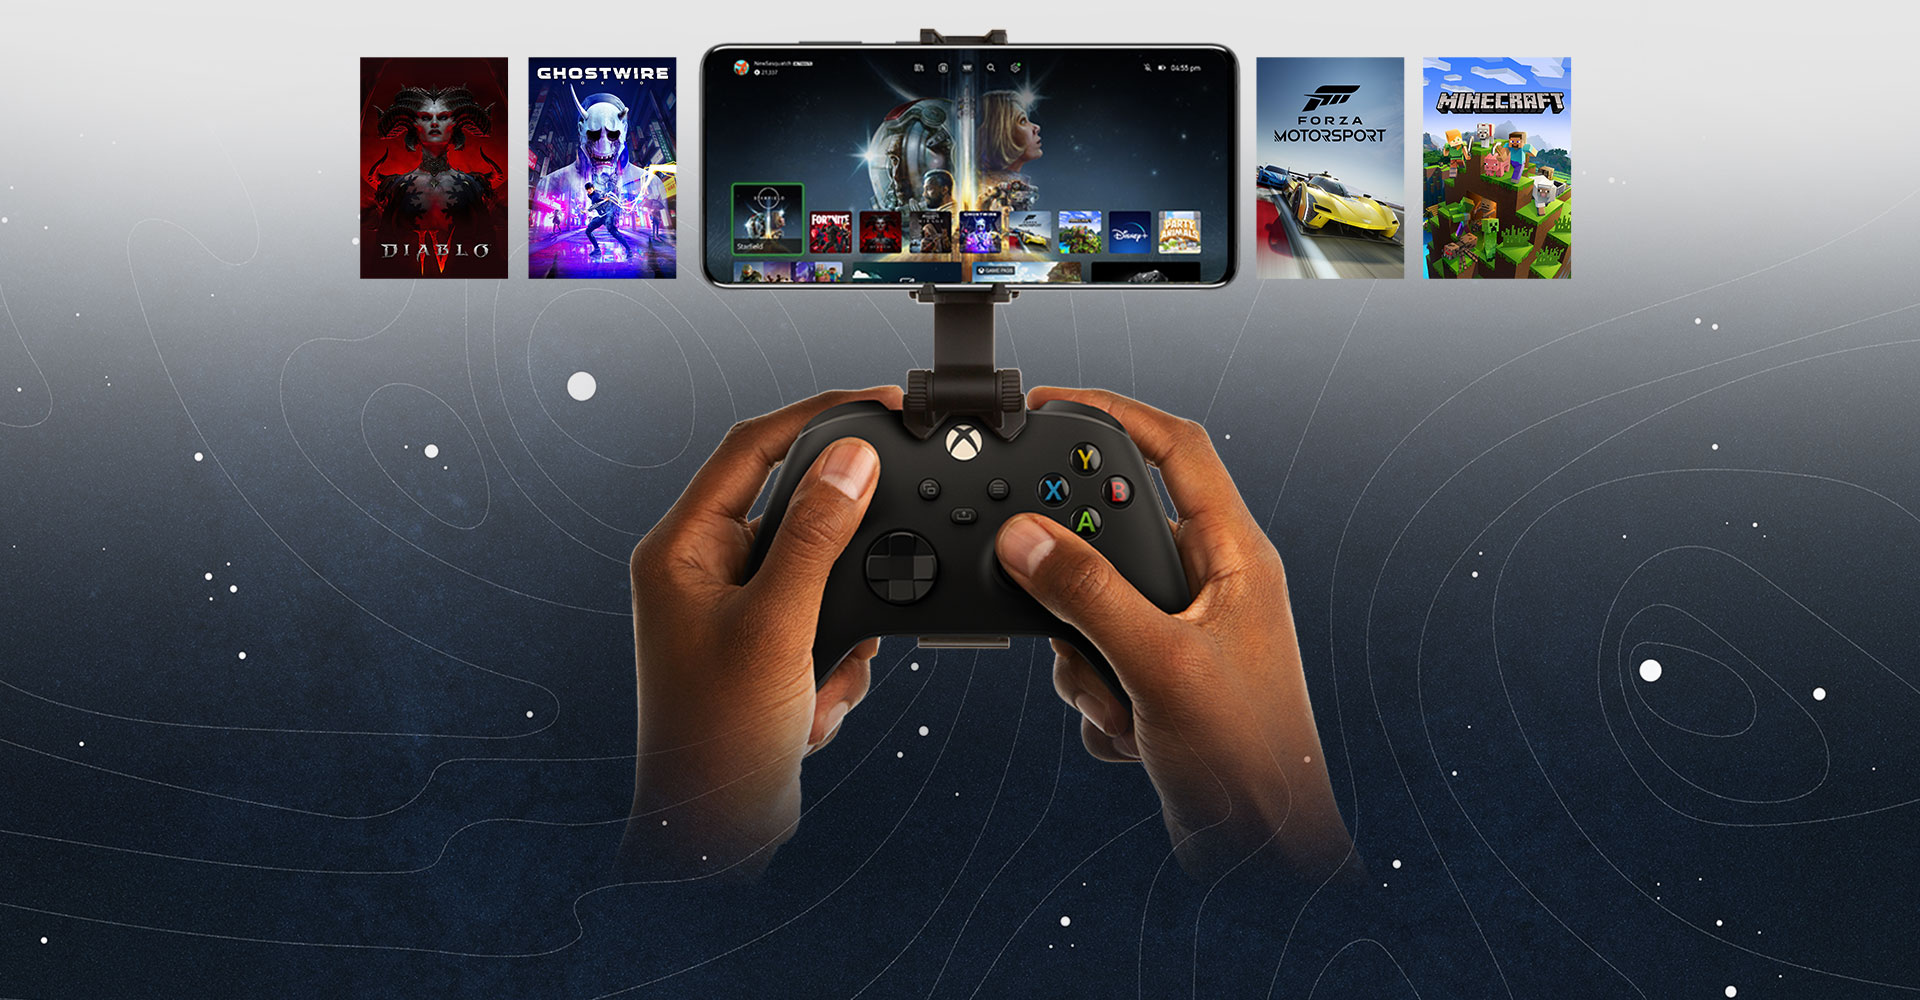 Dispositivo móvil conectado a un control Xbox, destacando una selección de títulos a que jugar. El mundo de Halo Infinite se extiende más allá del teléfono.